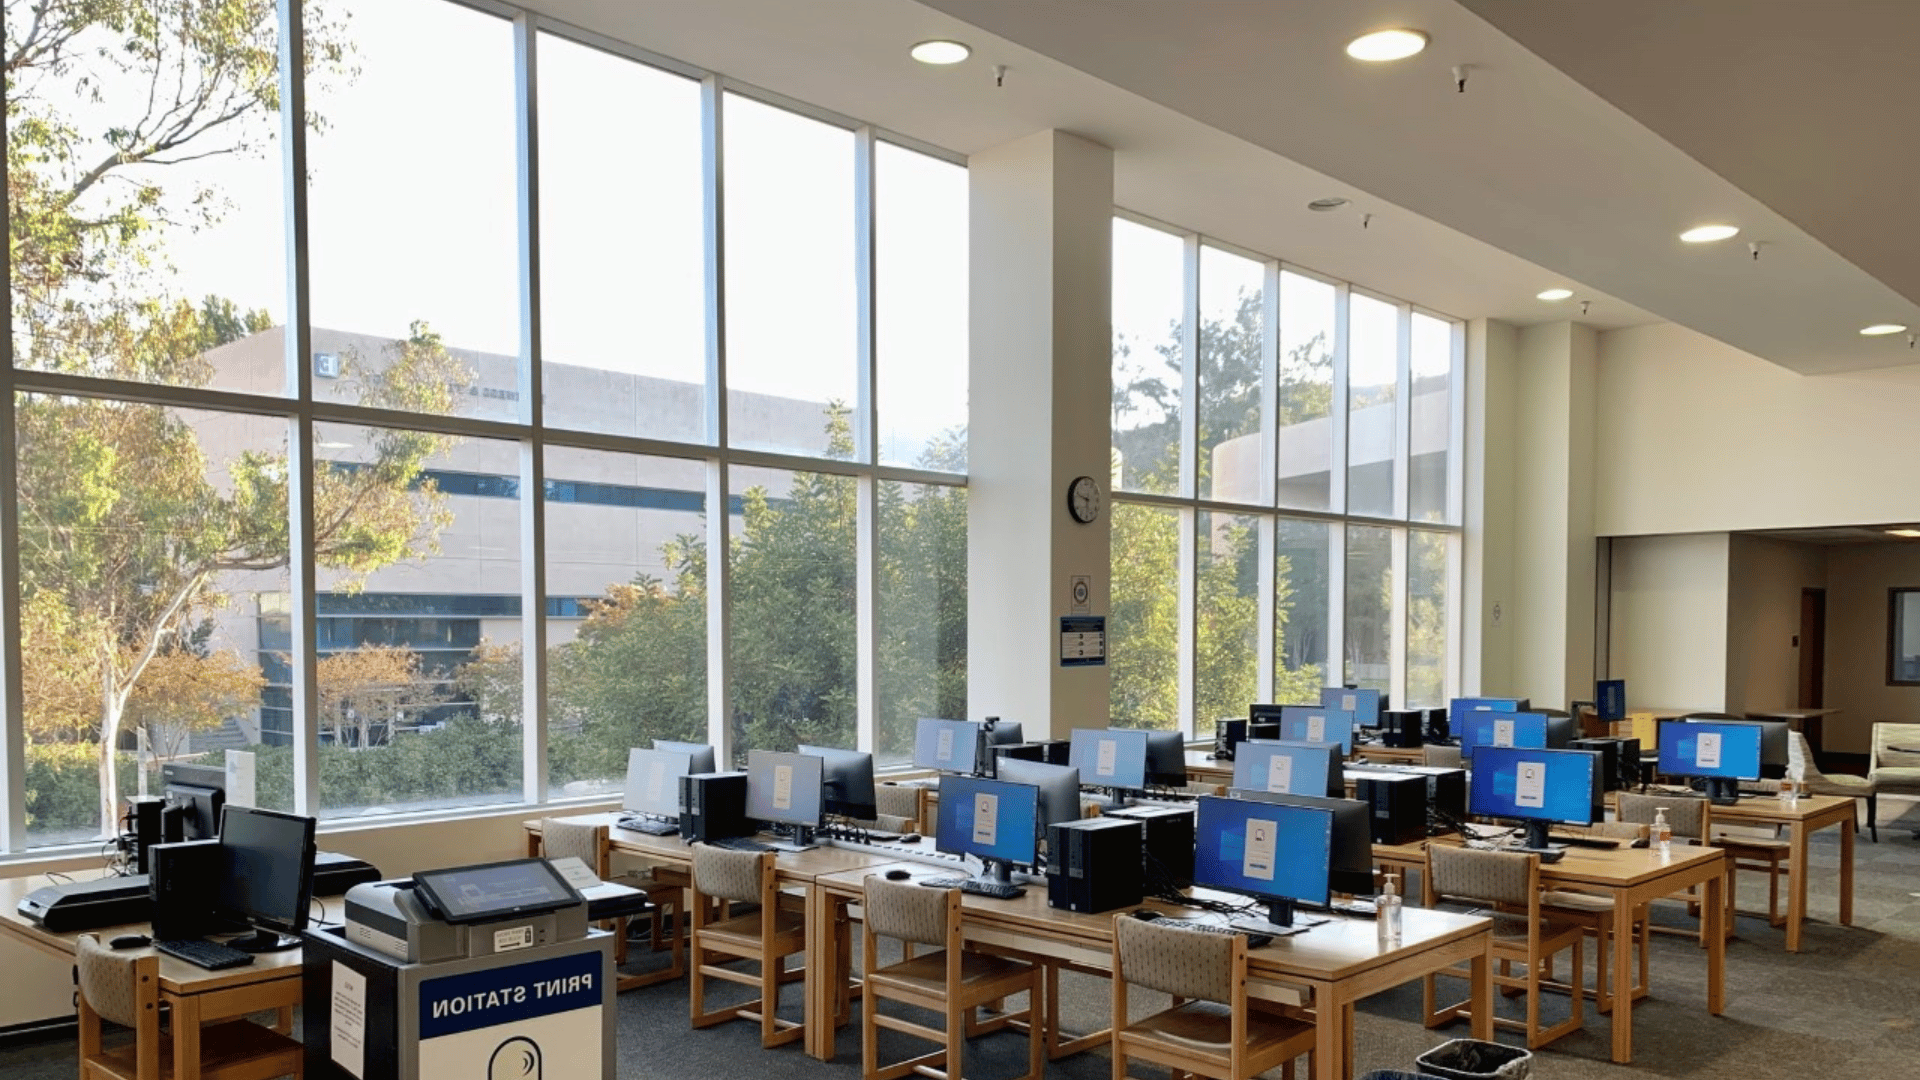 库亚马卡学院图书馆的计算机实验室和打印站照片